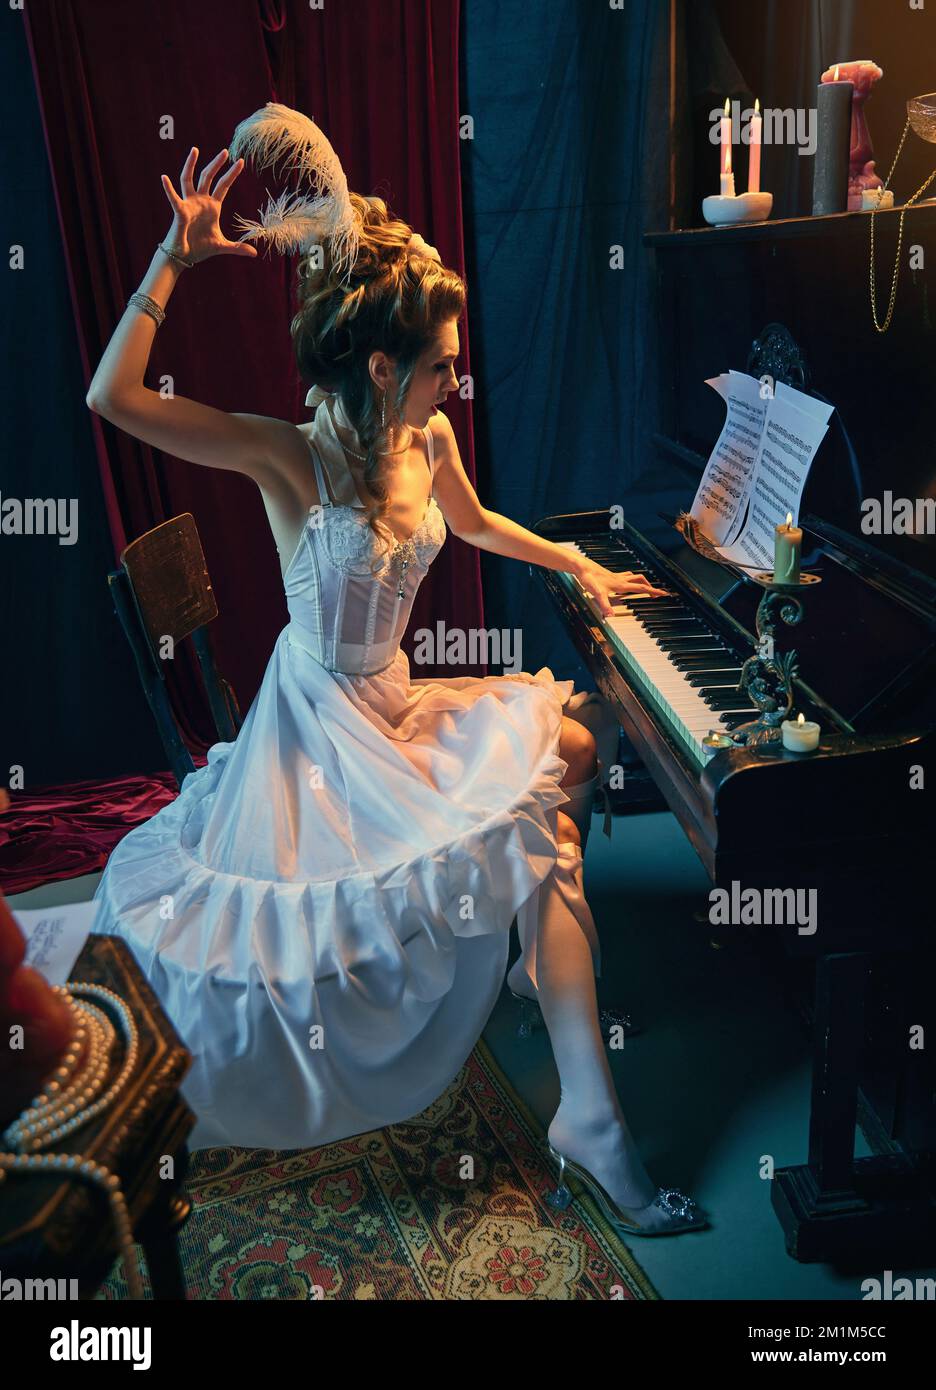 Performances émotionnellement. Portrait d'une belle jeune fille à l'image d'une princesse médiévale en robe blanche élégante assise au piano et jouant Banque D'Images